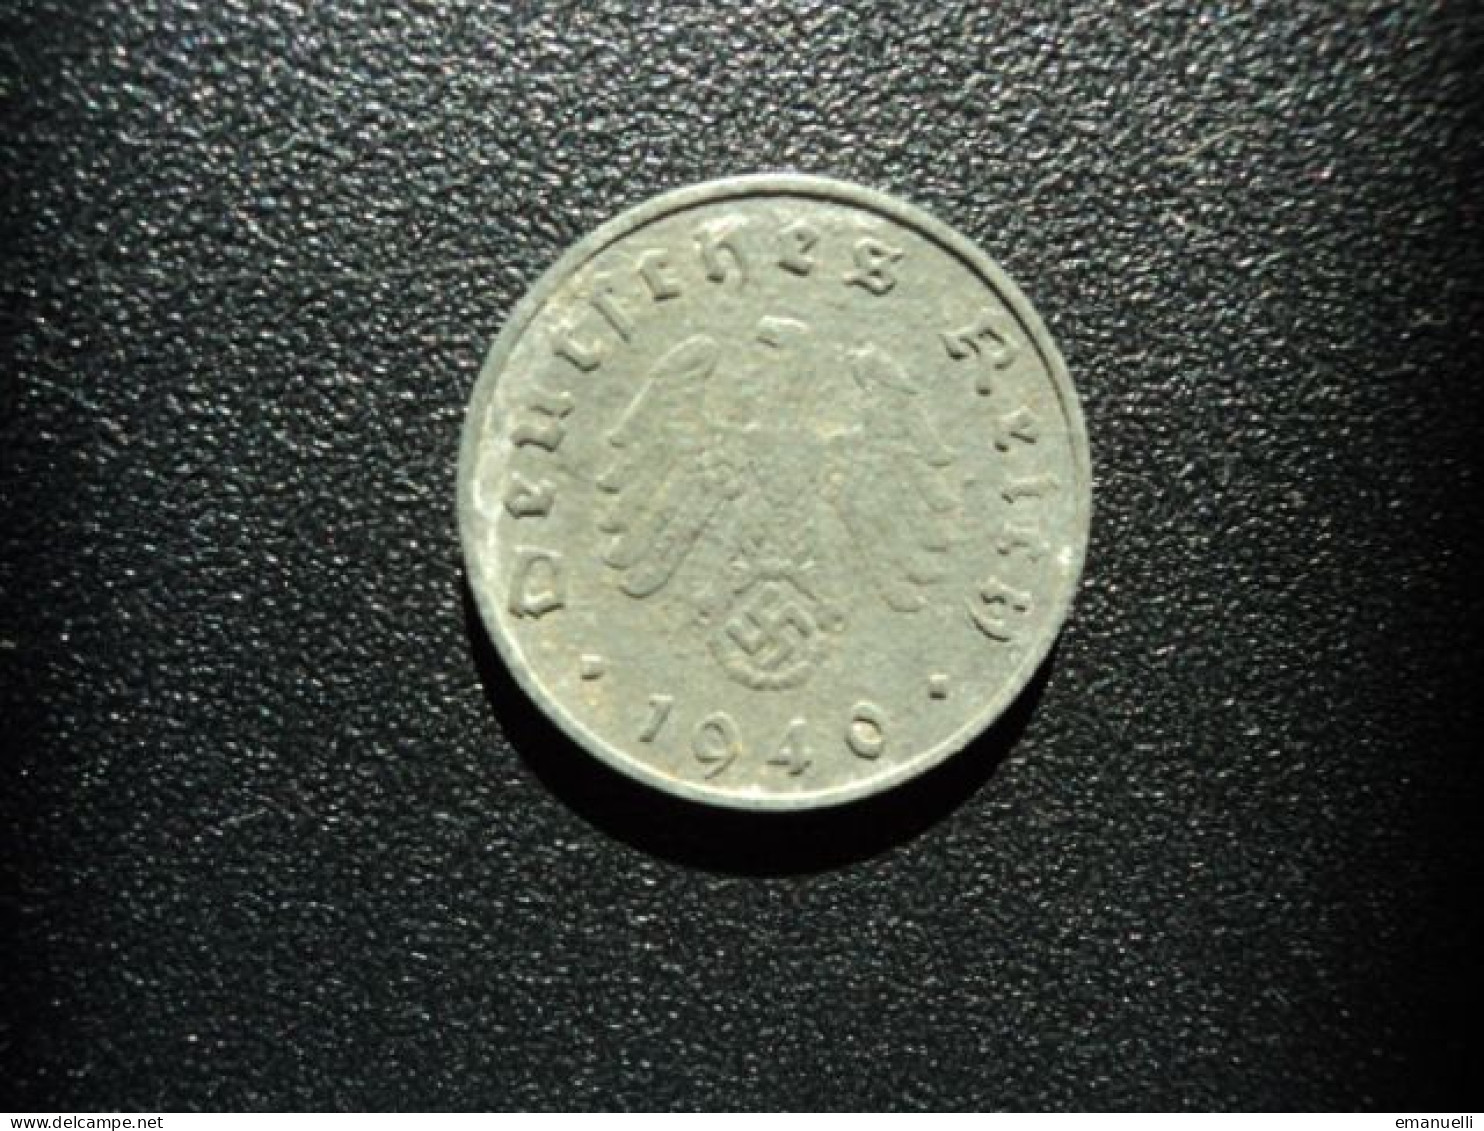 ALLEMAGNE : 10 REICHSPFENNIG   1940 J   KM 101    TTB - 10 Reichspfennig